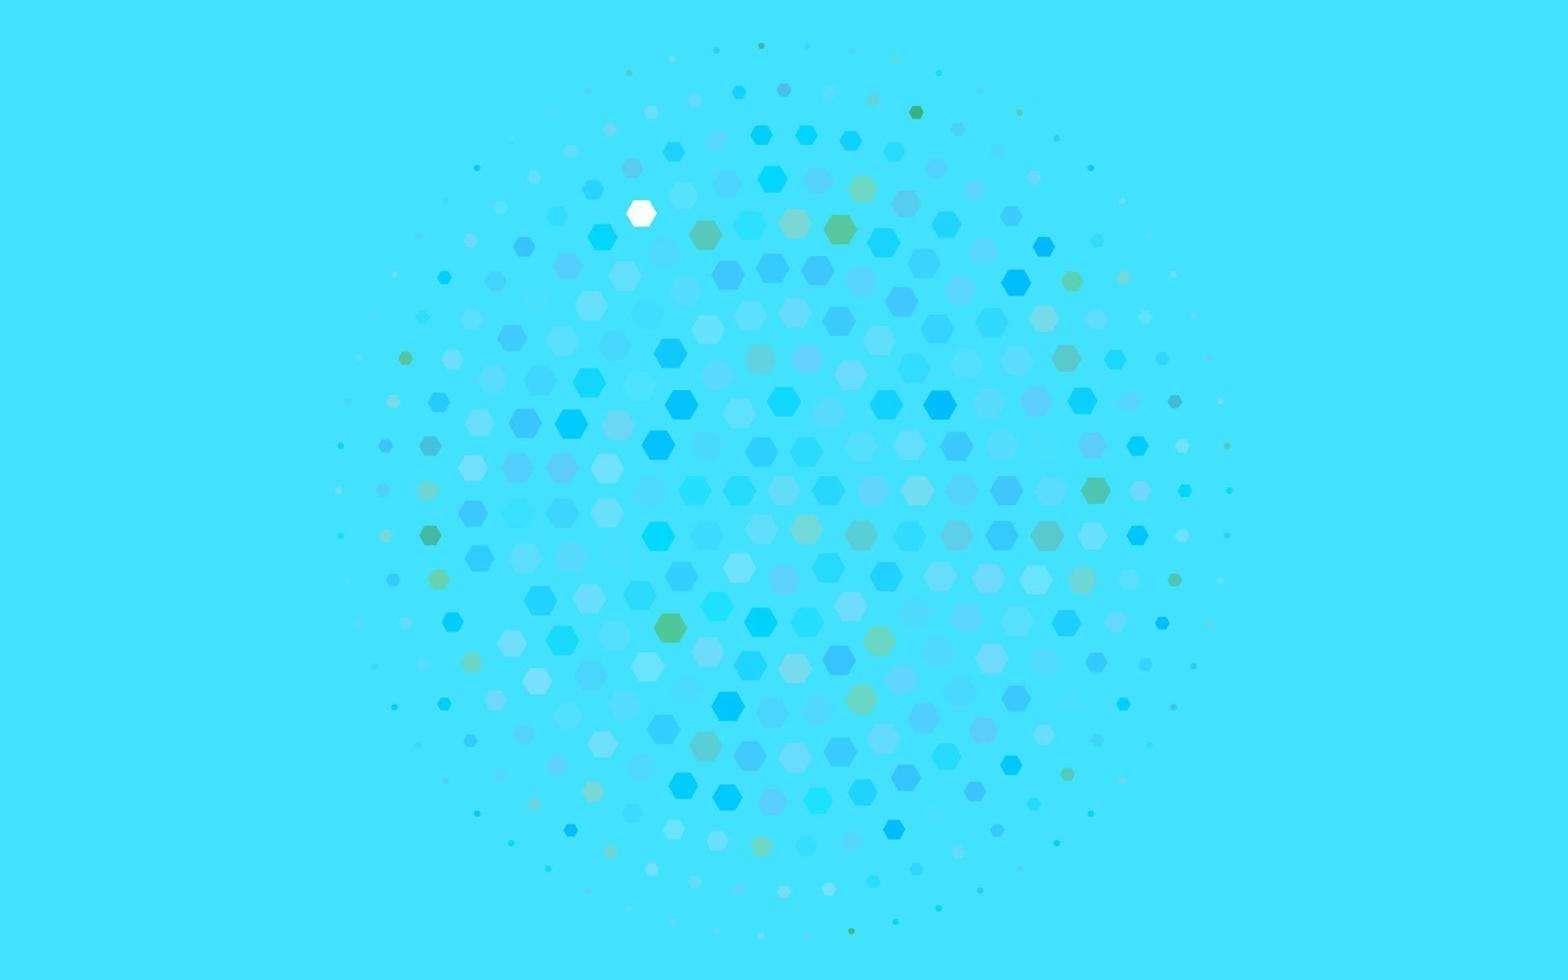 motif vectoriel bleu clair et vert avec des hexagones colorés.